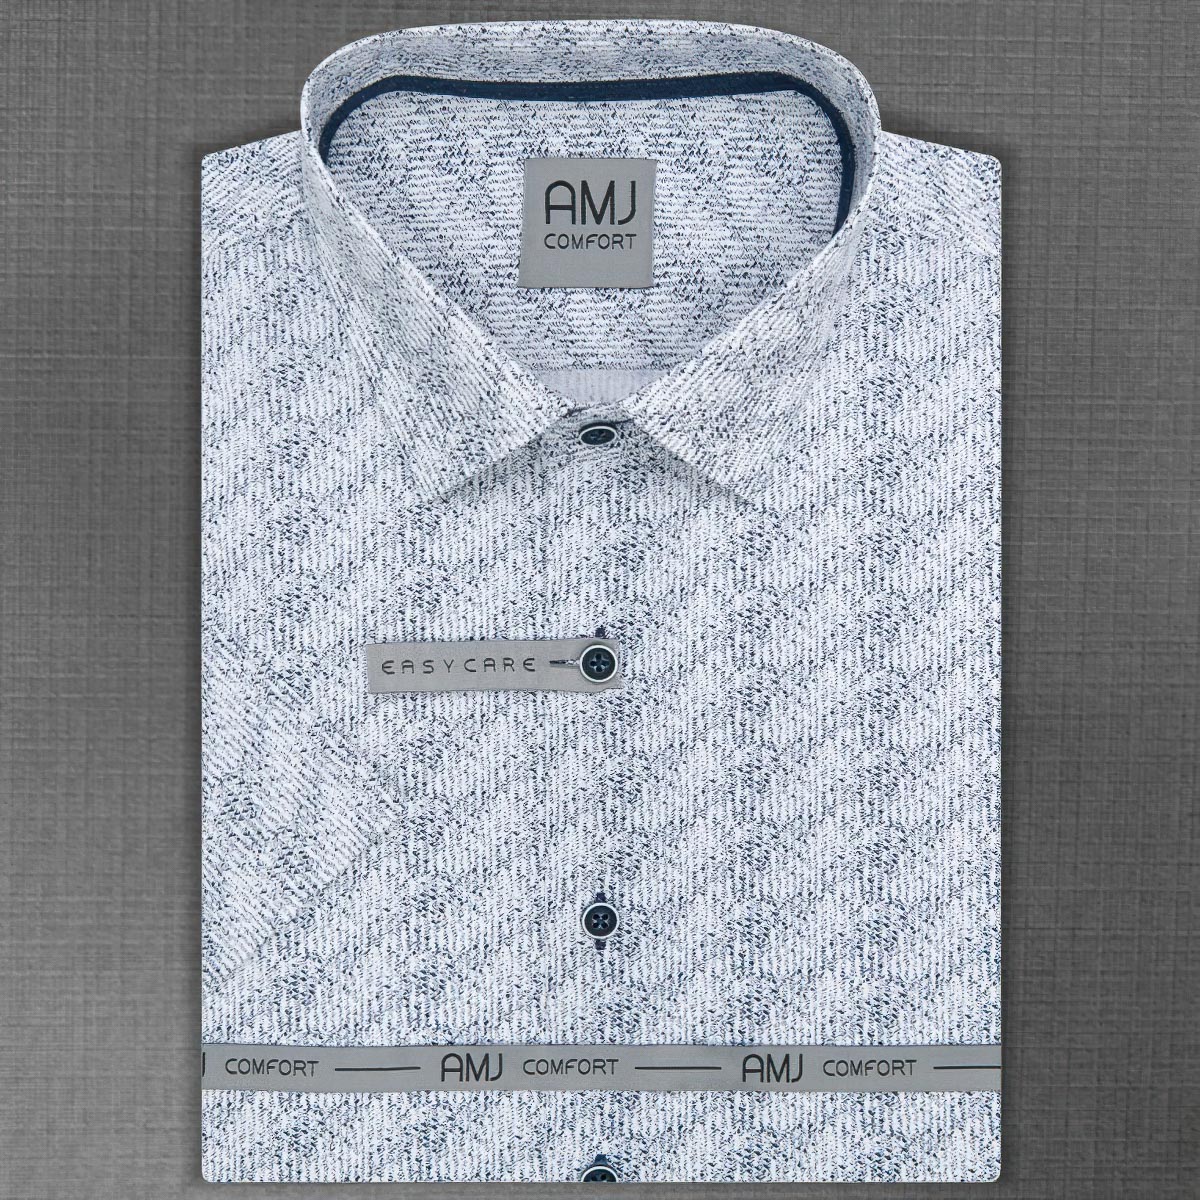 Pánská košile AMJ bavlněná, žíhaná modrá na bílé VKBR1068, krátký rukáv